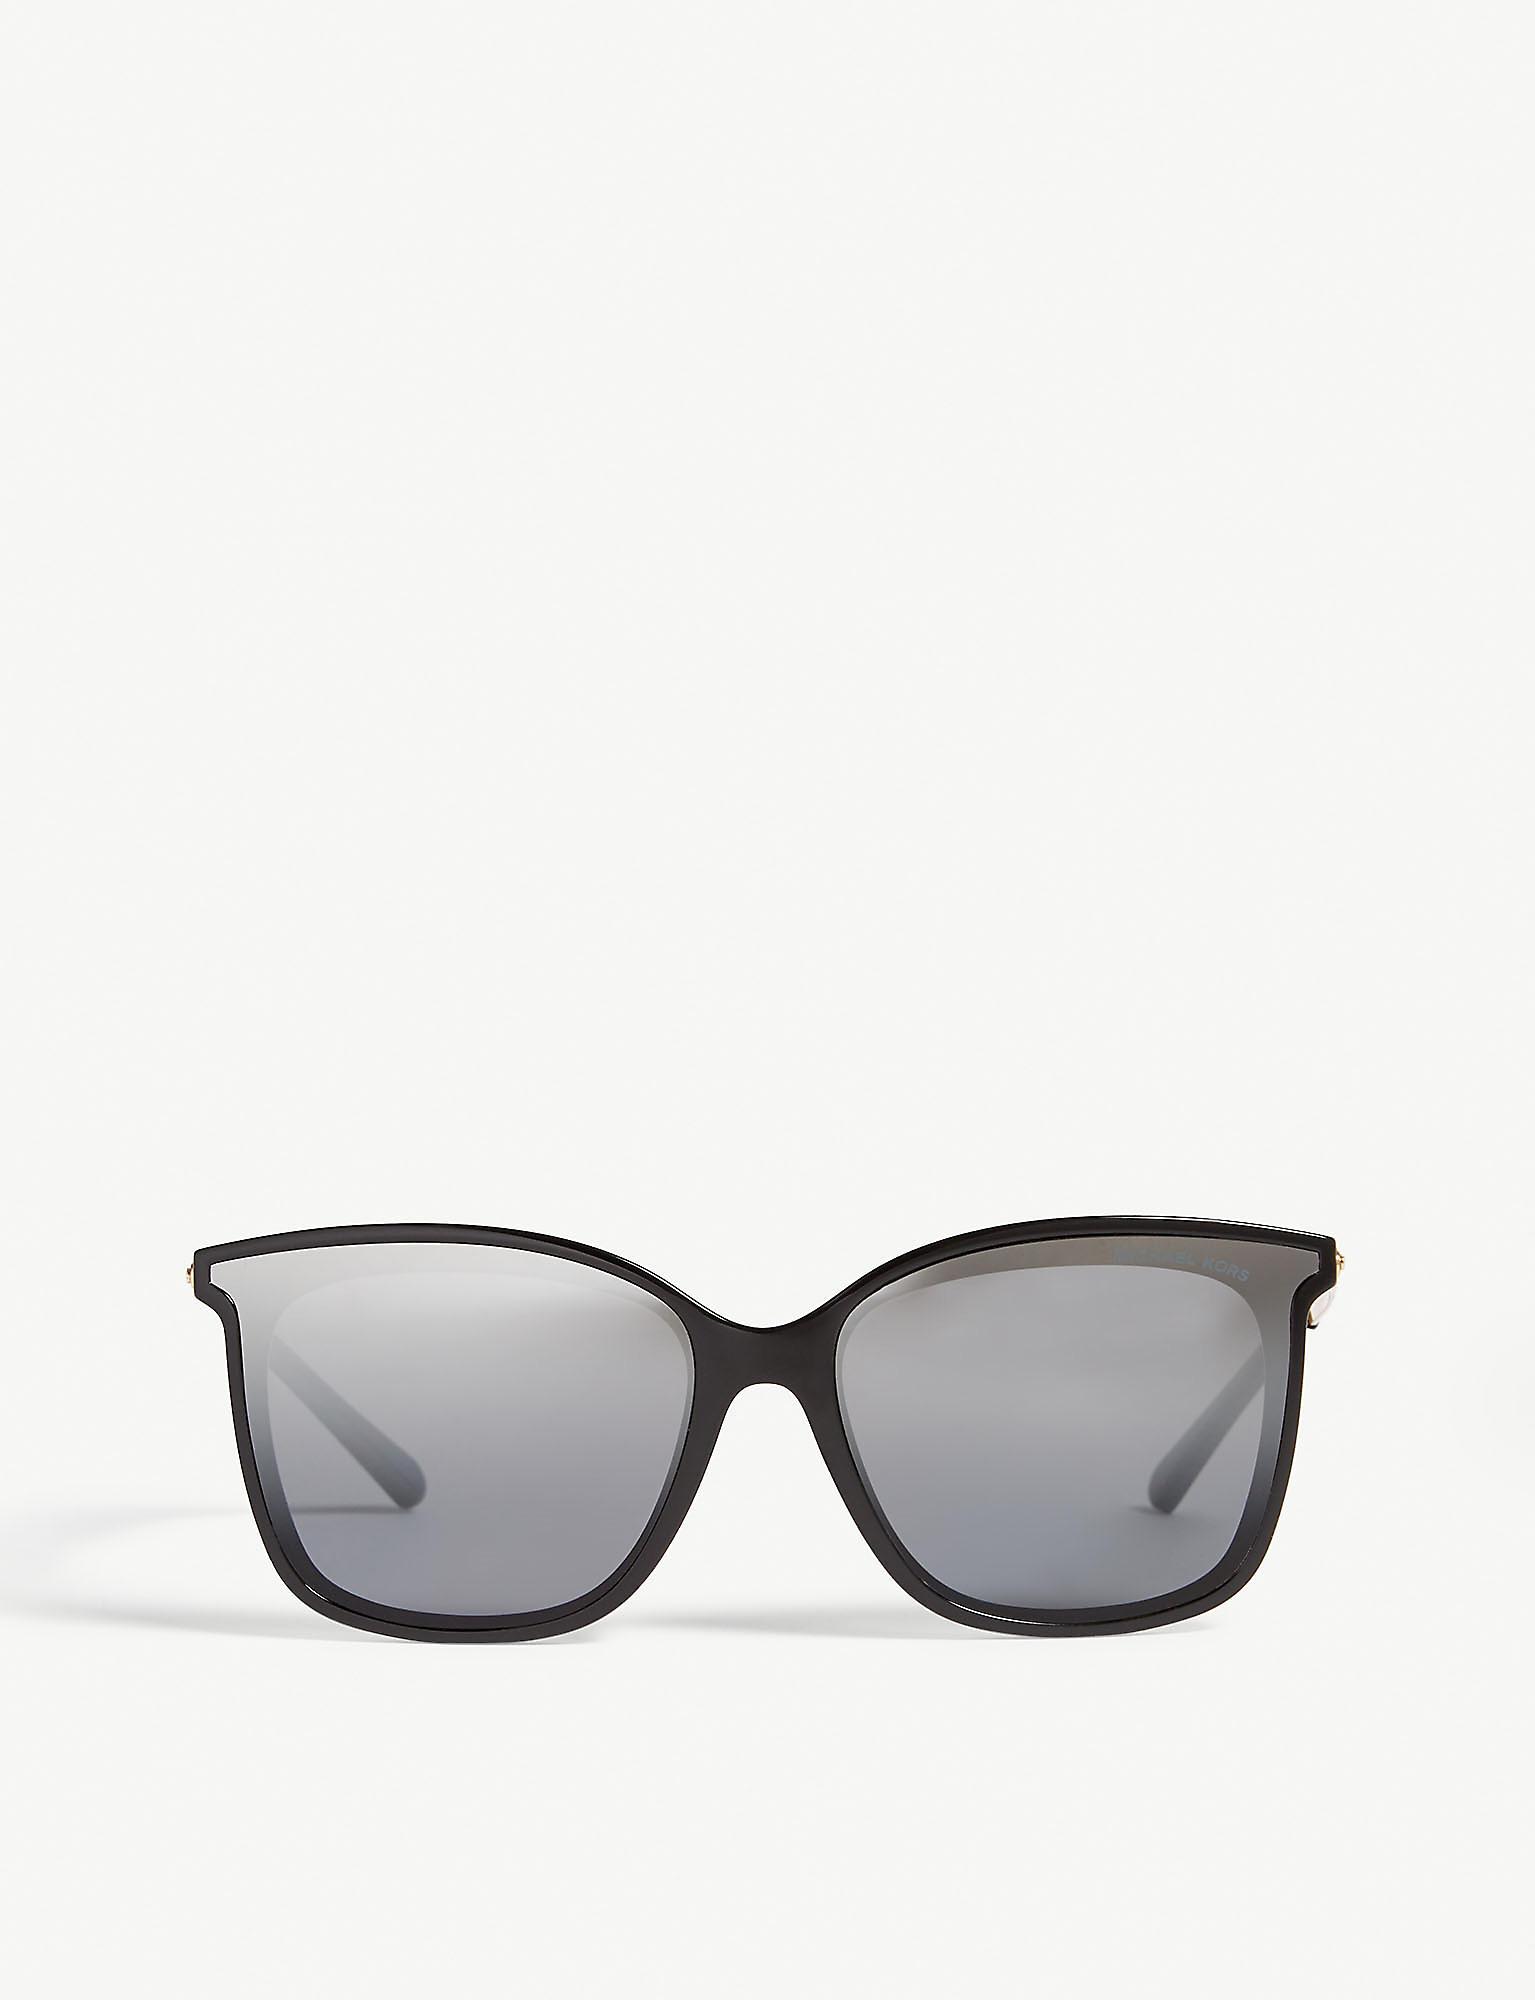 Michael Kors Zermatt Square-frame Sunglasses in Black - Lyst